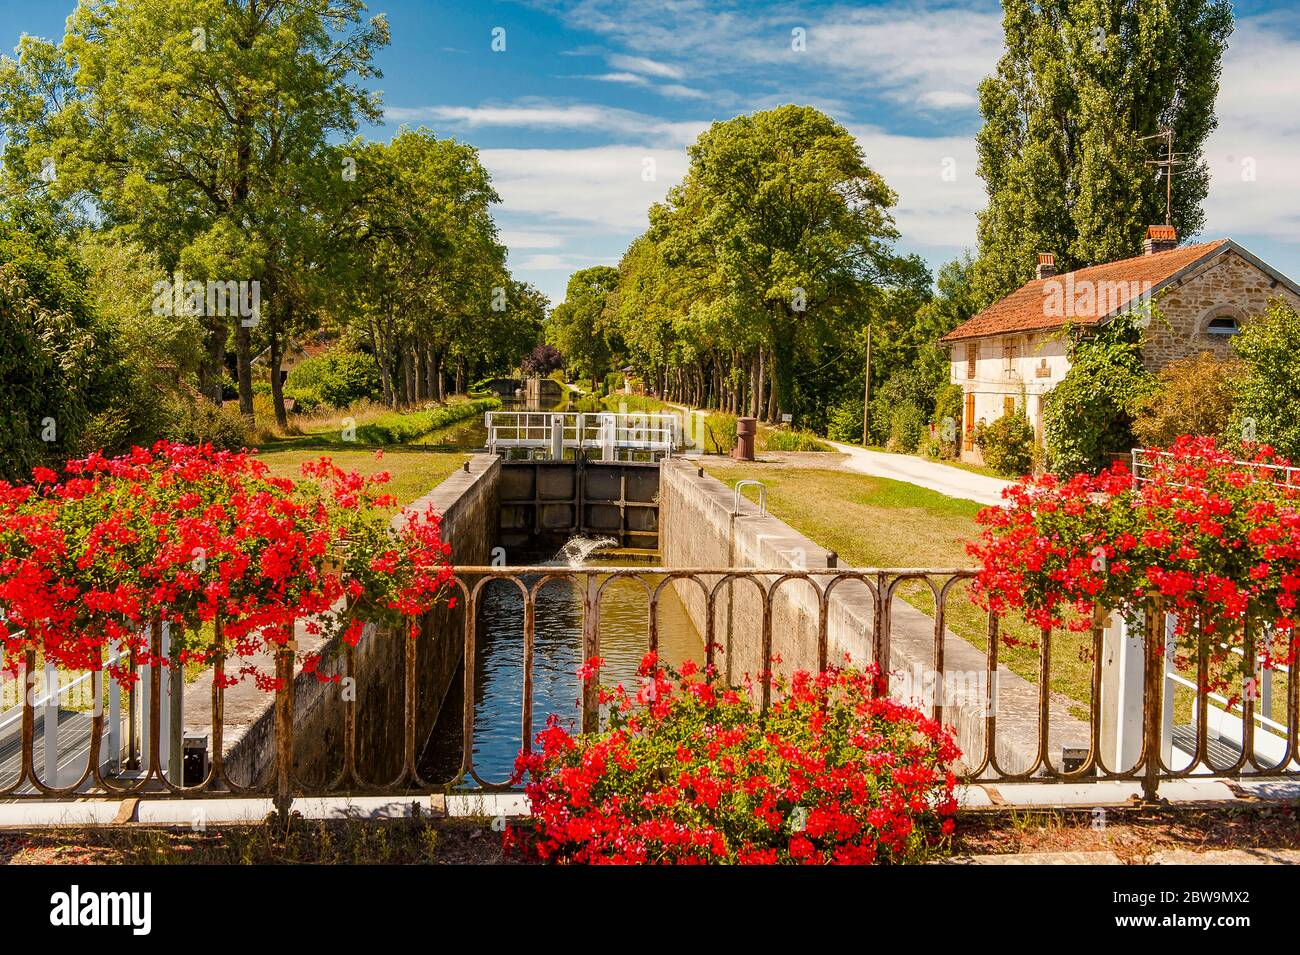 Im Burgund liebt man Geranien. Sie schmücken auch den Canal de Bourgogne bei Vandenasse Foto Stock